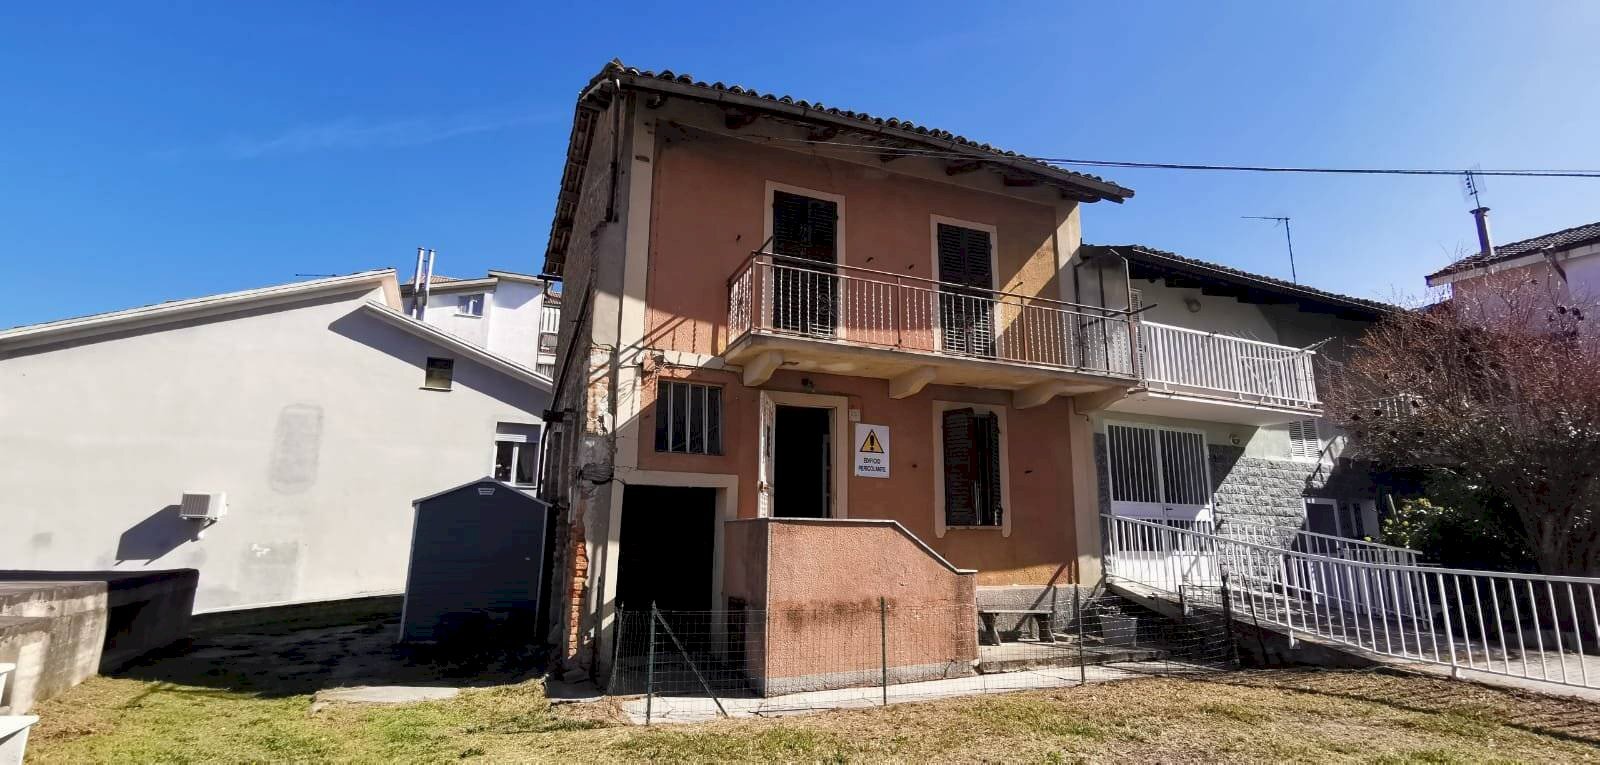 Rustico / Casale in vendita a Agliano Terme, 1 locali, prezzo € 27.000 | CambioCasa.it